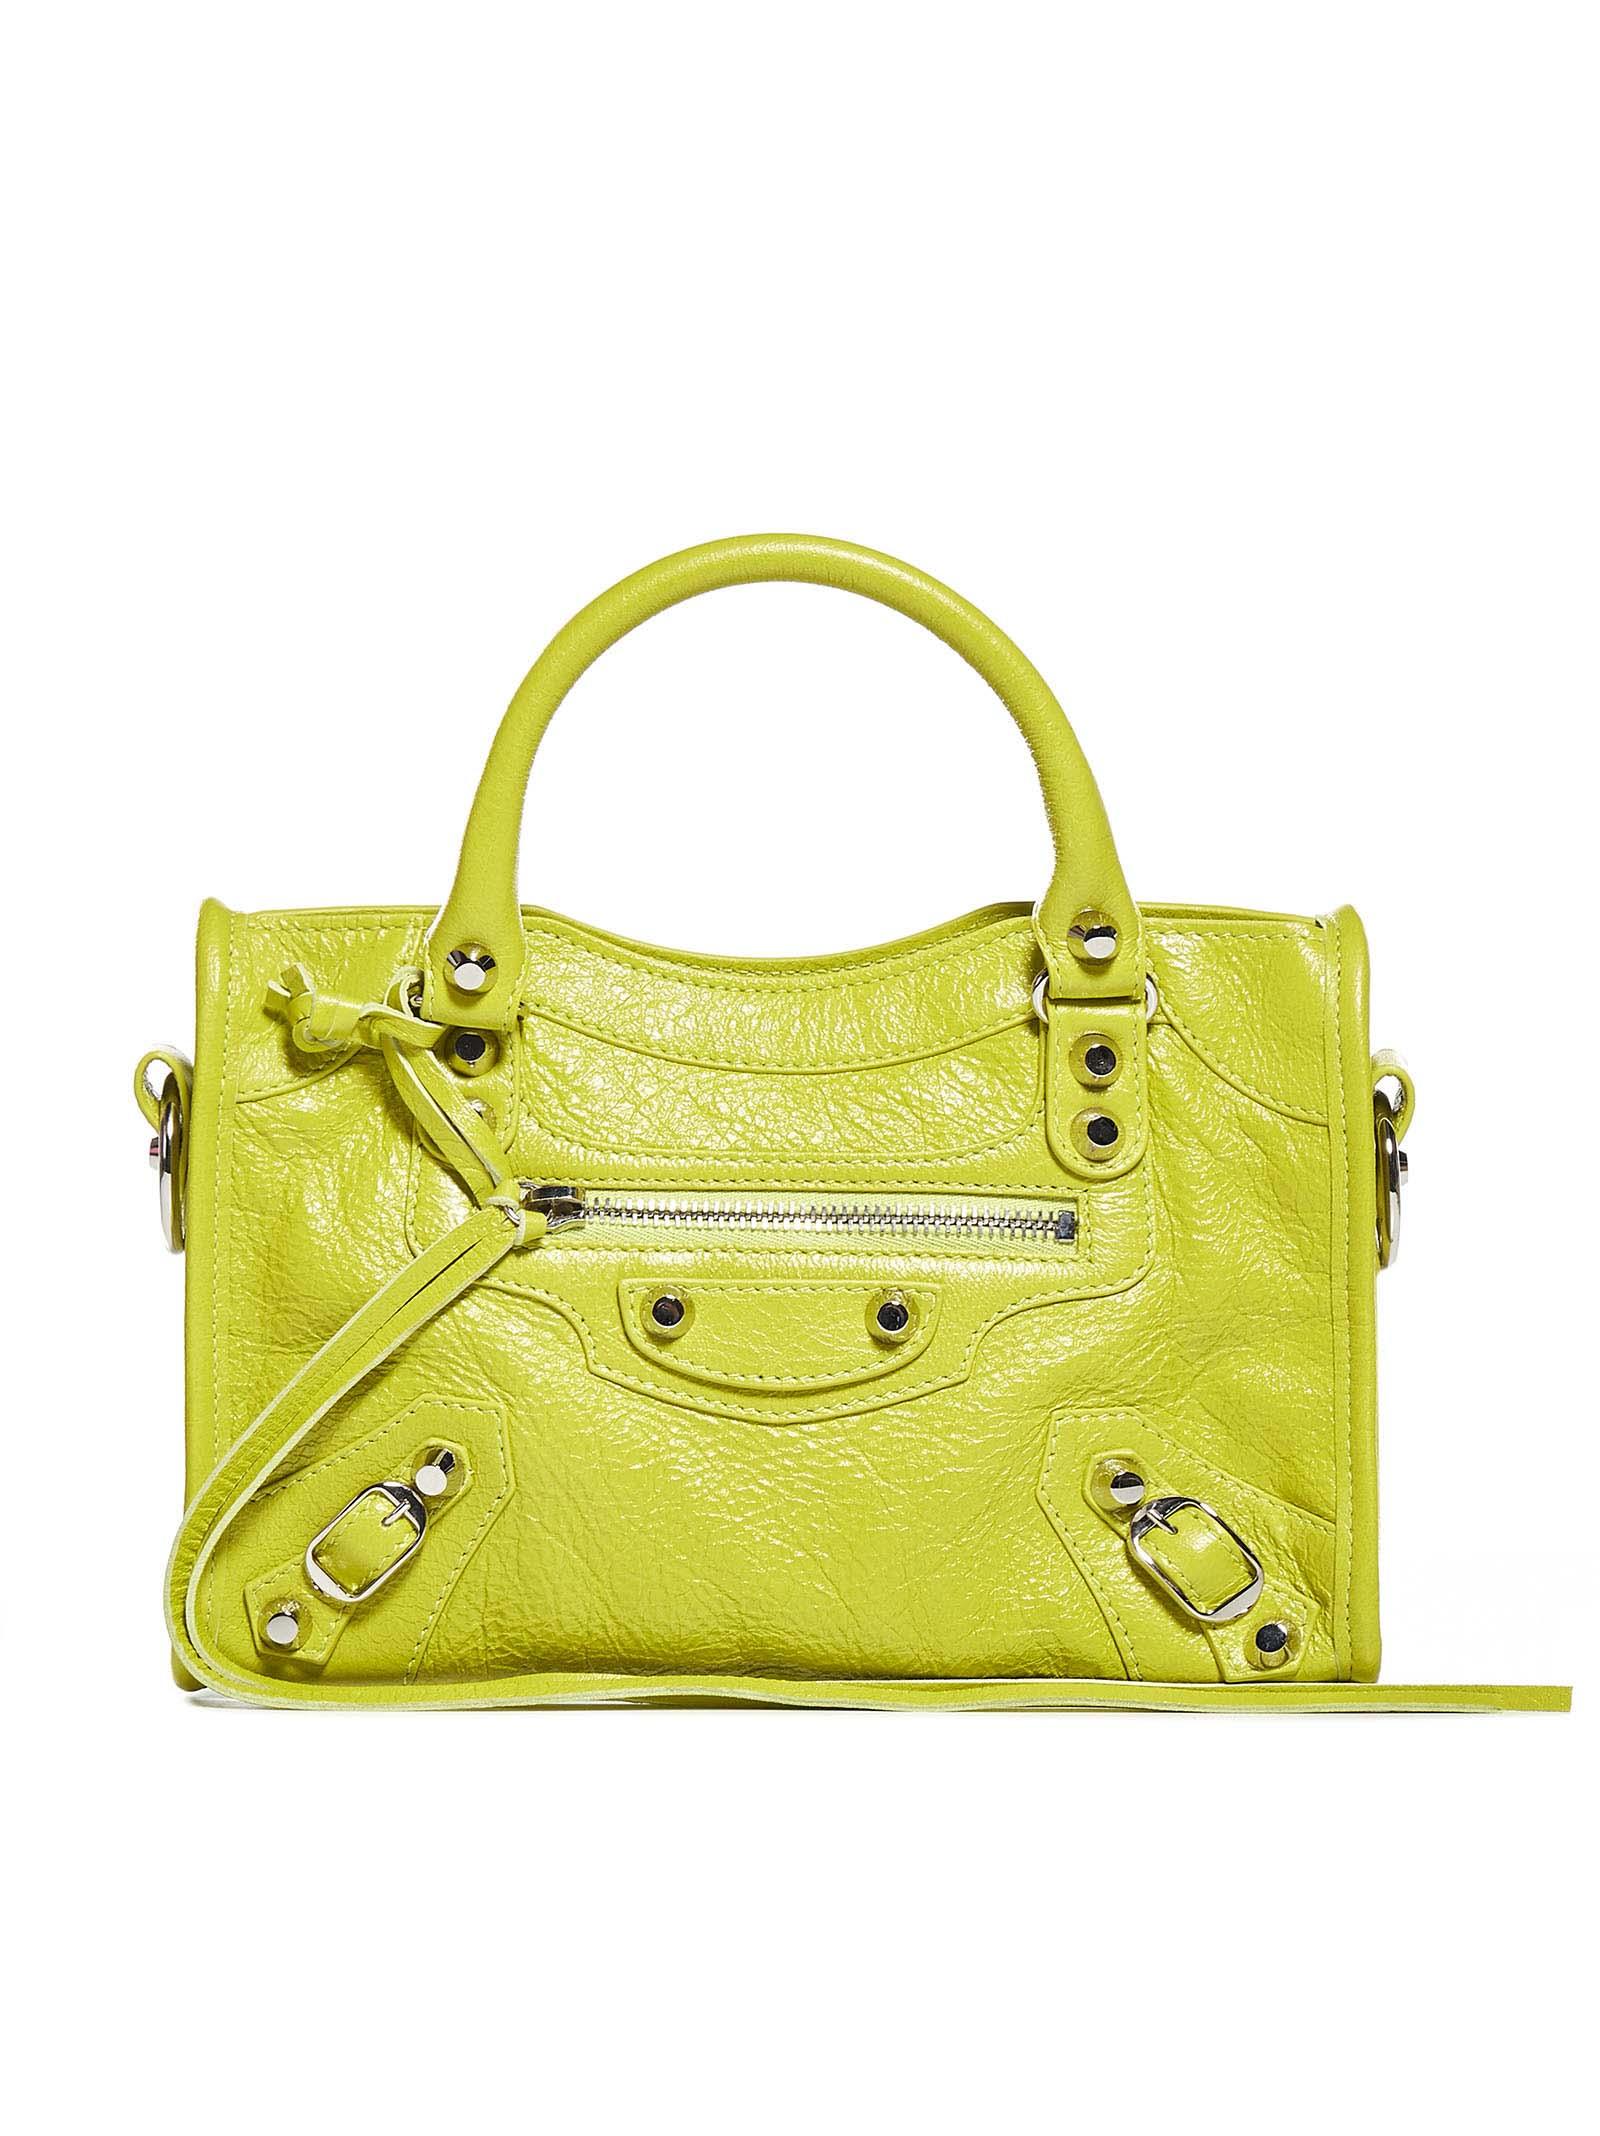 Balenciaga Classic Mini City Bag in Yellow